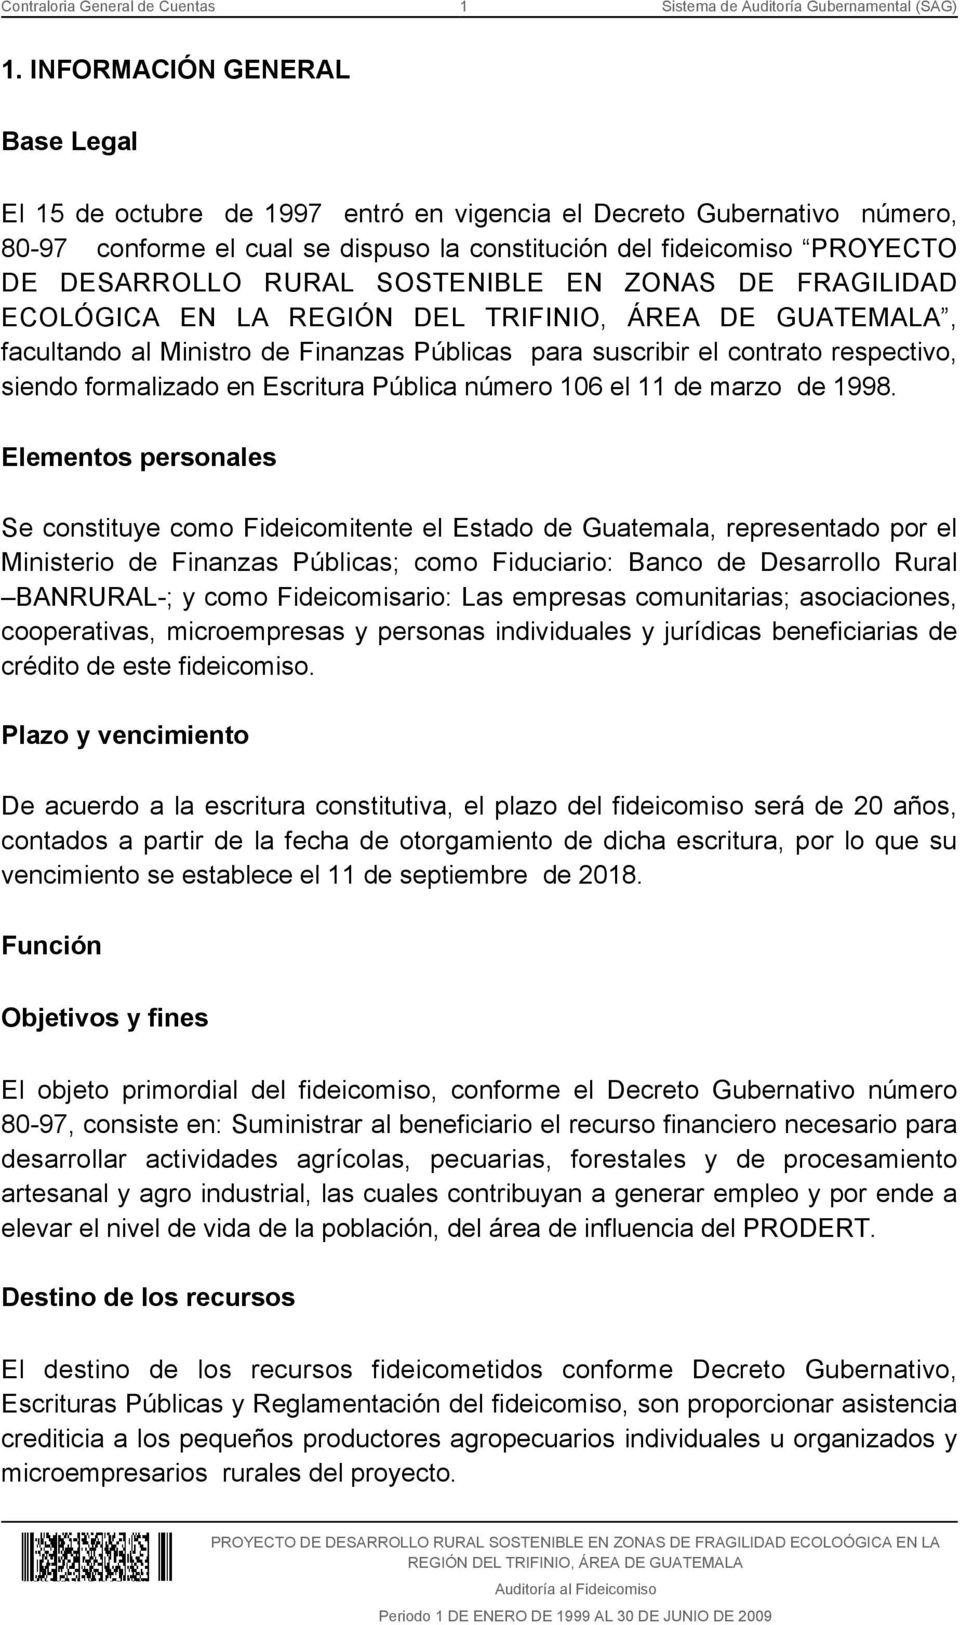 SOSTENIBLE EN ZONAS DE FRAGILIDAD ECOLÓGICA EN LA REGIÓN DEL TRIFINIO, ÁREA DE GUATEMALA, facultando al Ministro de Finanzas Públicas para suscribir el contrato respectivo, siendo formalizado en